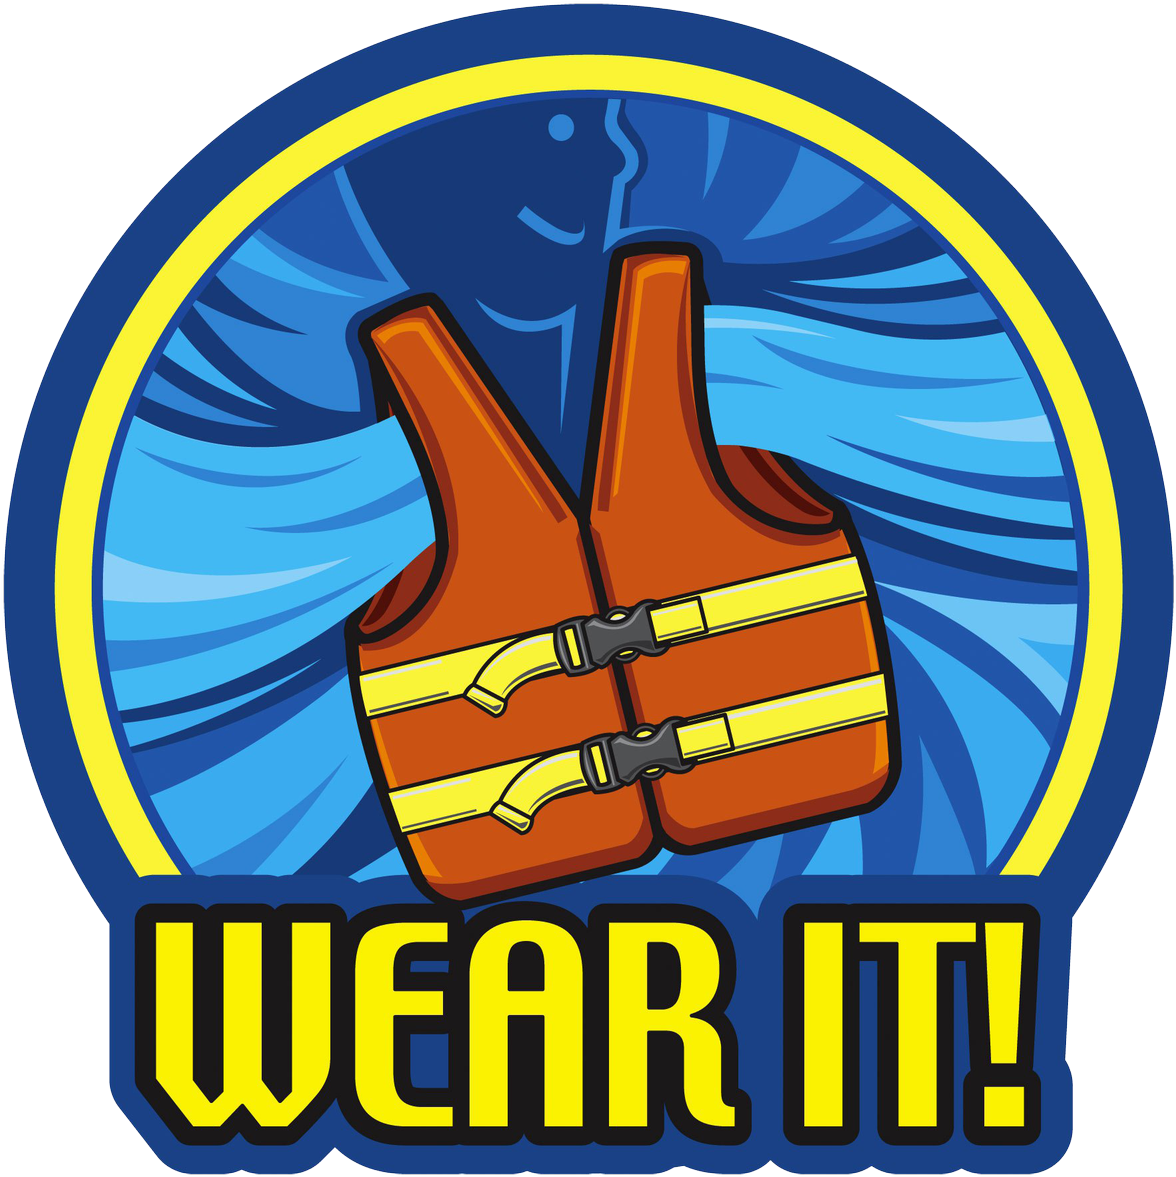 Early Season Boaters Urged To Wear Life Jackets On - Wear It Life Jacket (1200x1200)